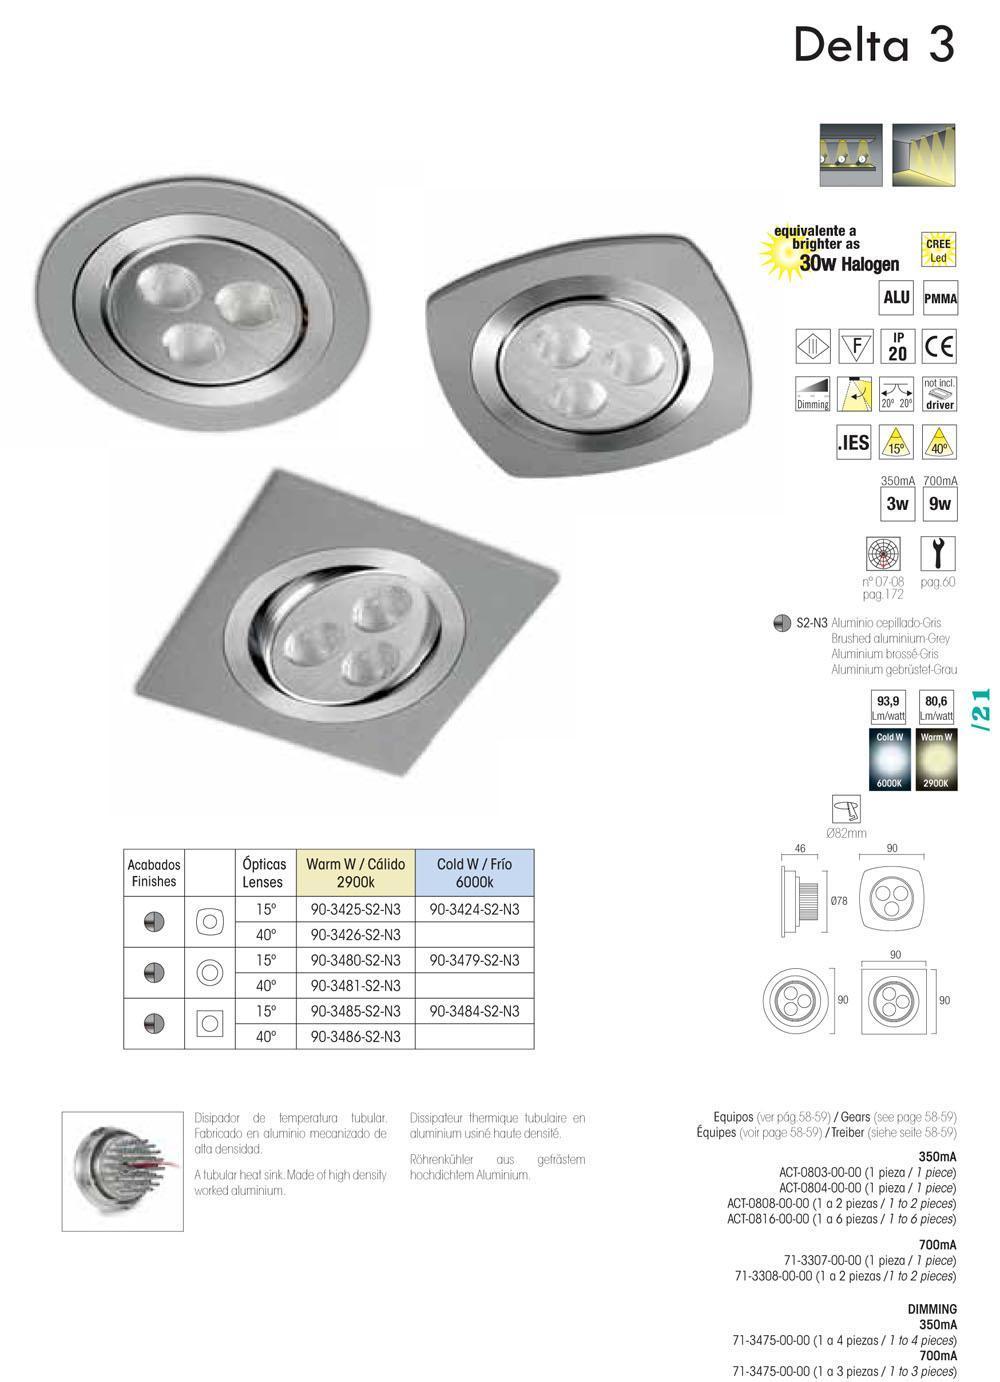 Faretto Downlight con 3 luci LED incluse LEDS C4 MODEL 3, 9W, luce bianca calda, colore argento.